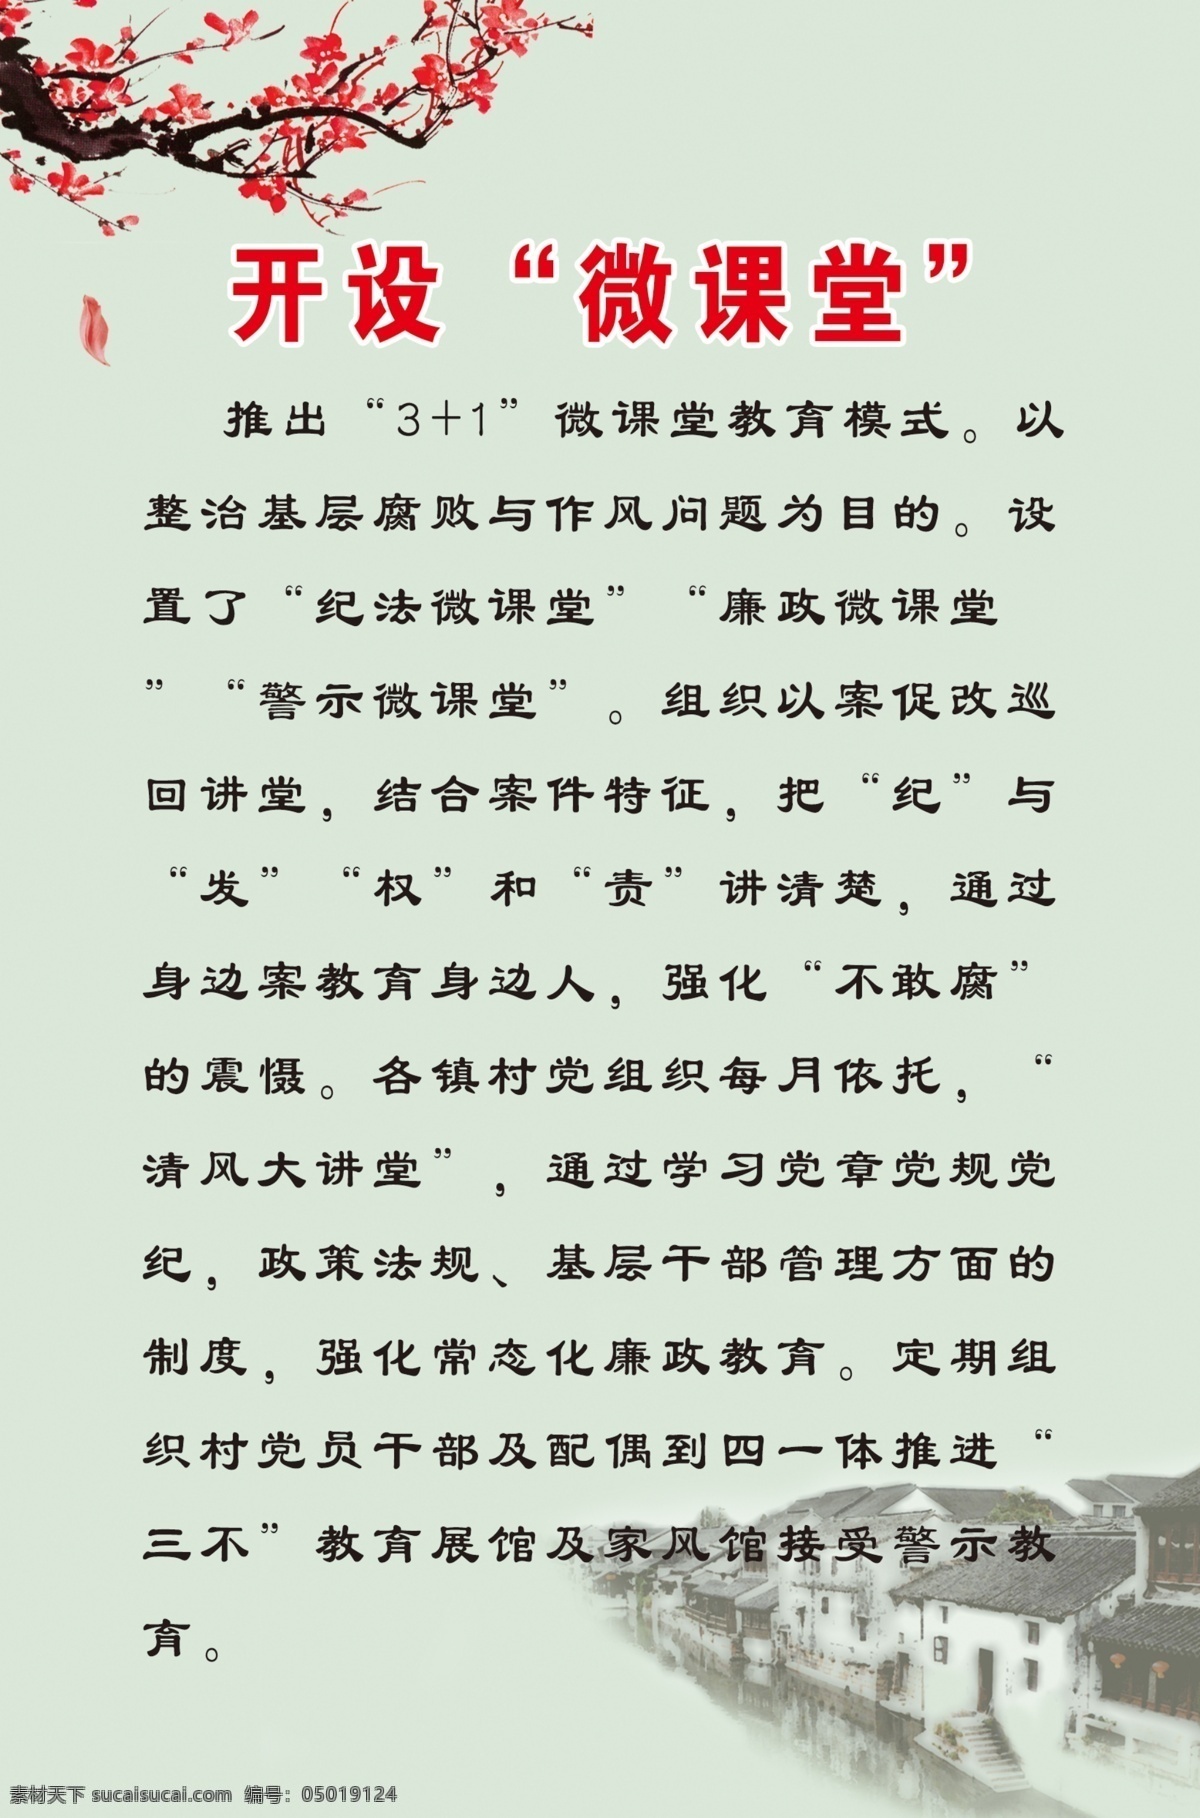 梅花 江南 小镇 背景 图 水墨画 海报 展板 中国风 山水画